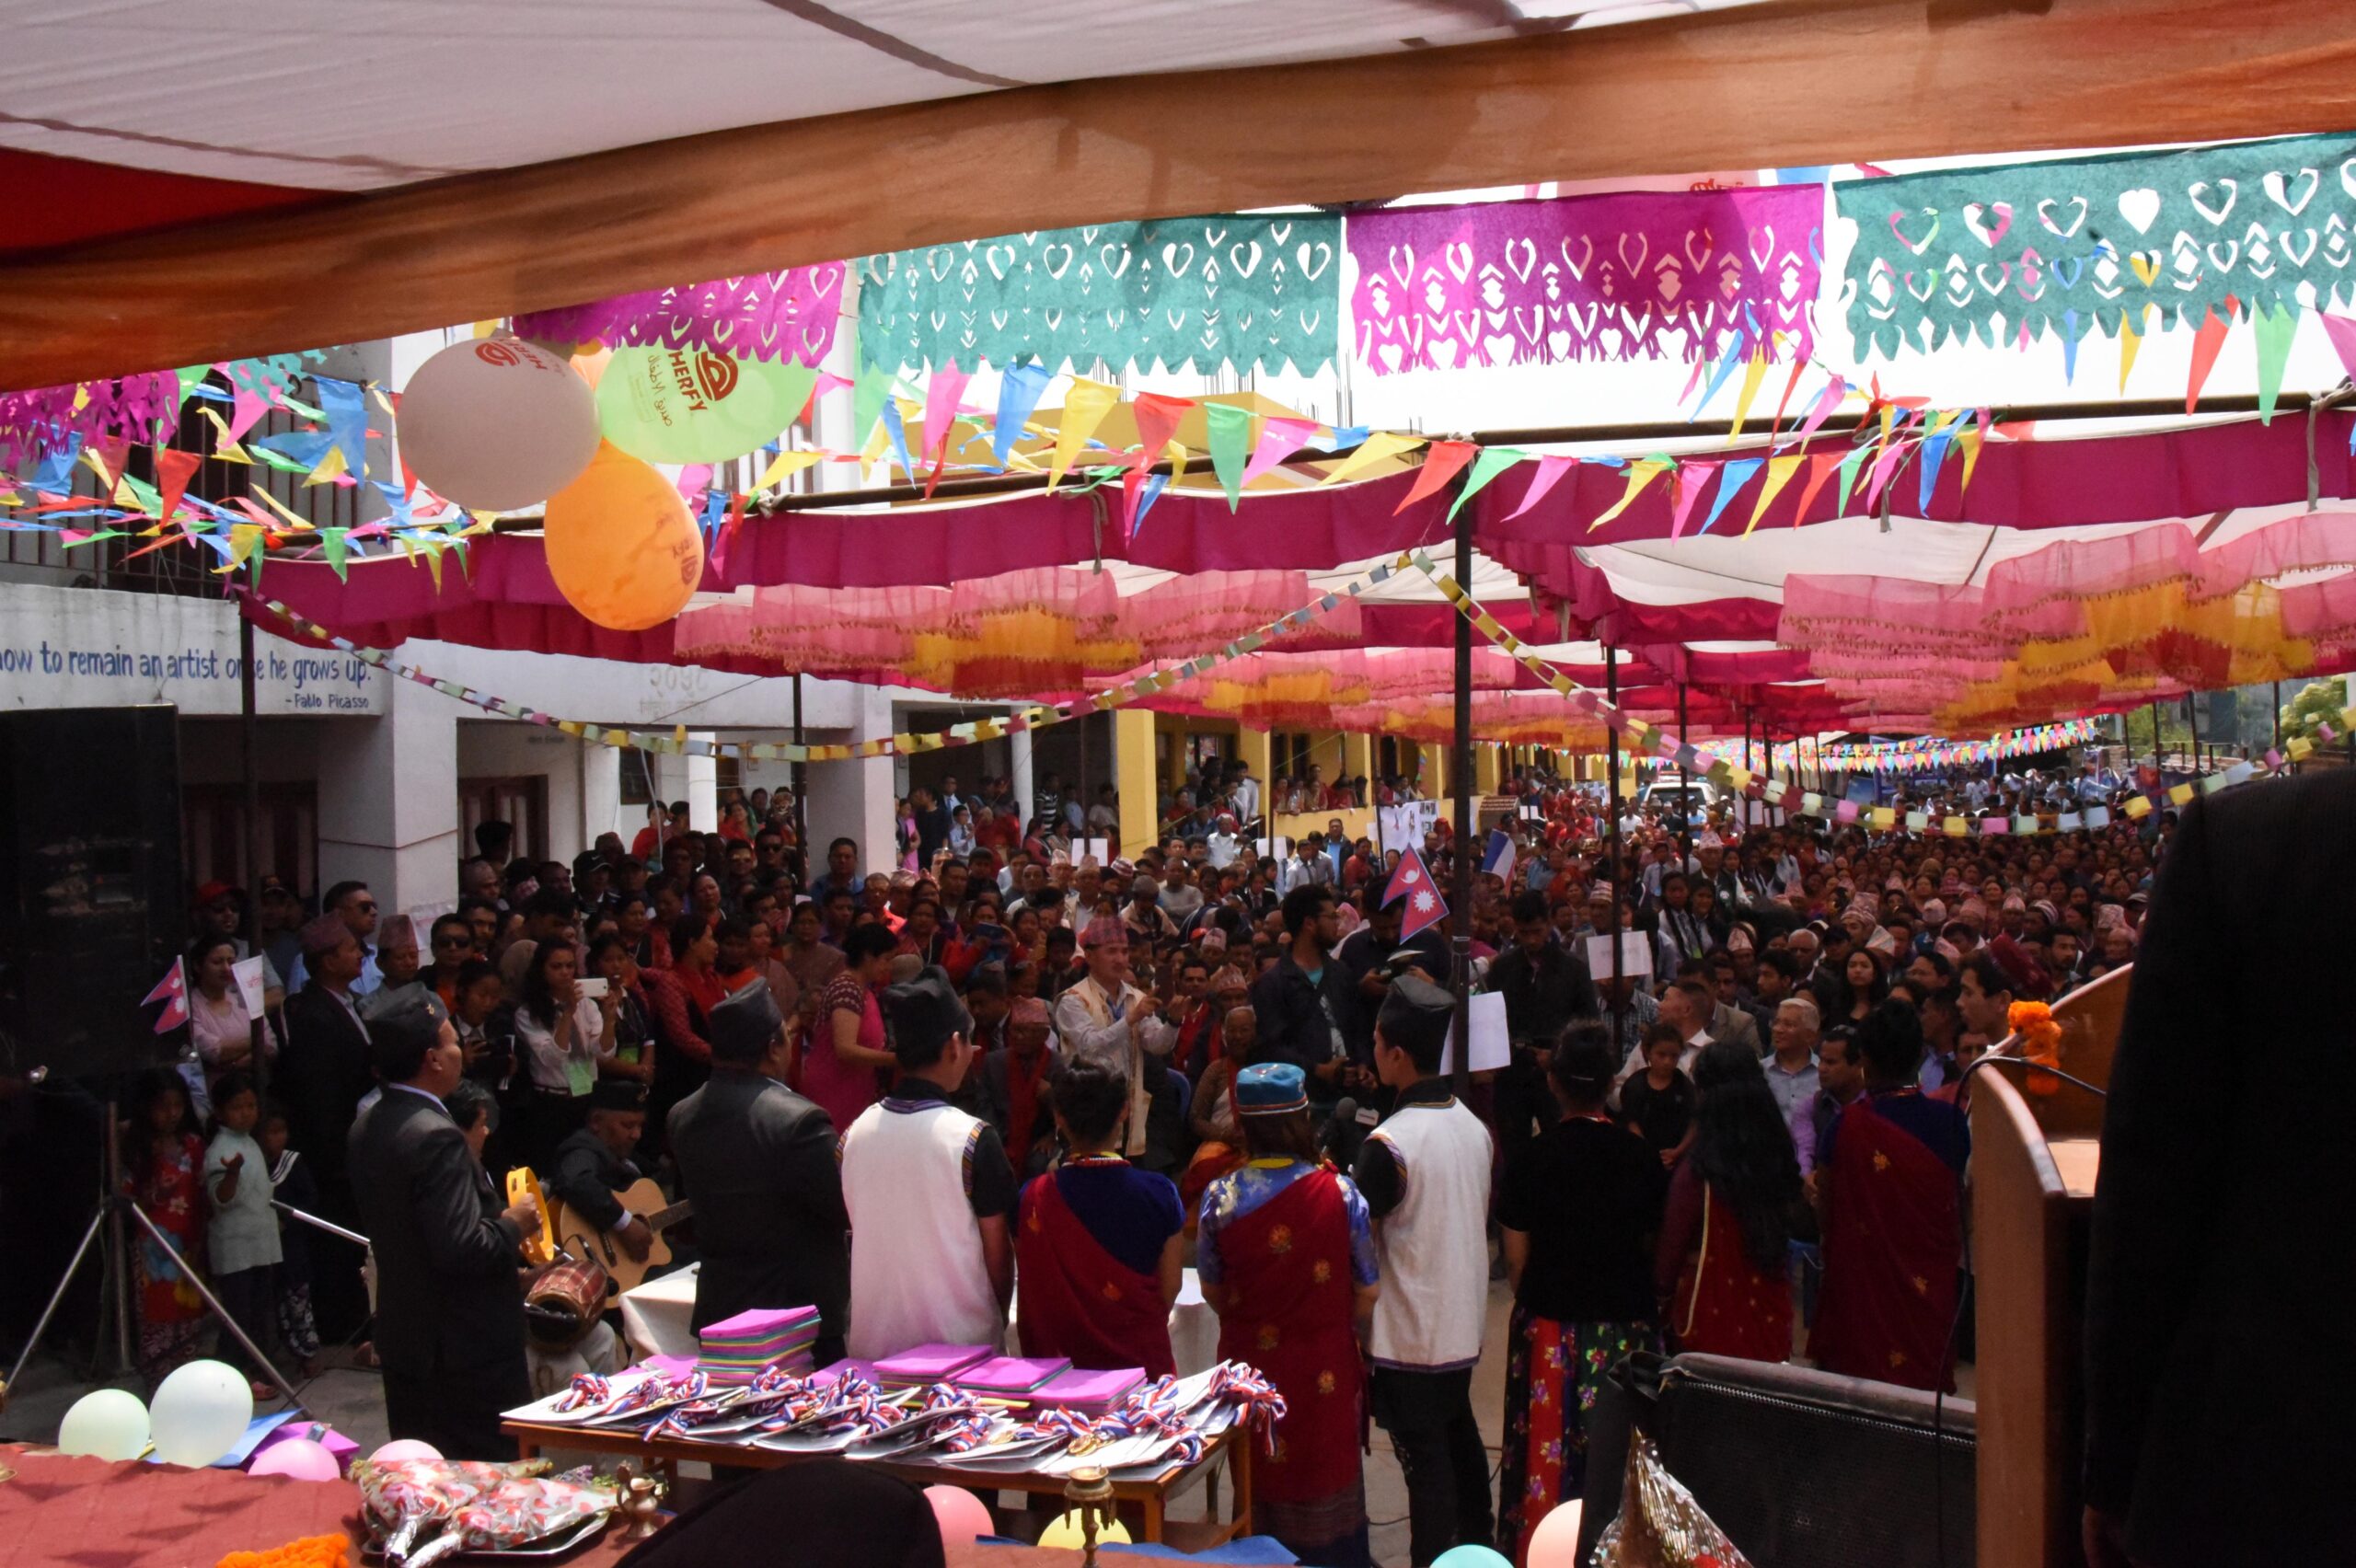 Environ 1500 personnes ont participé à l'inauguration de l'école de Mahalaxmi, près de la capitale Katmandou.